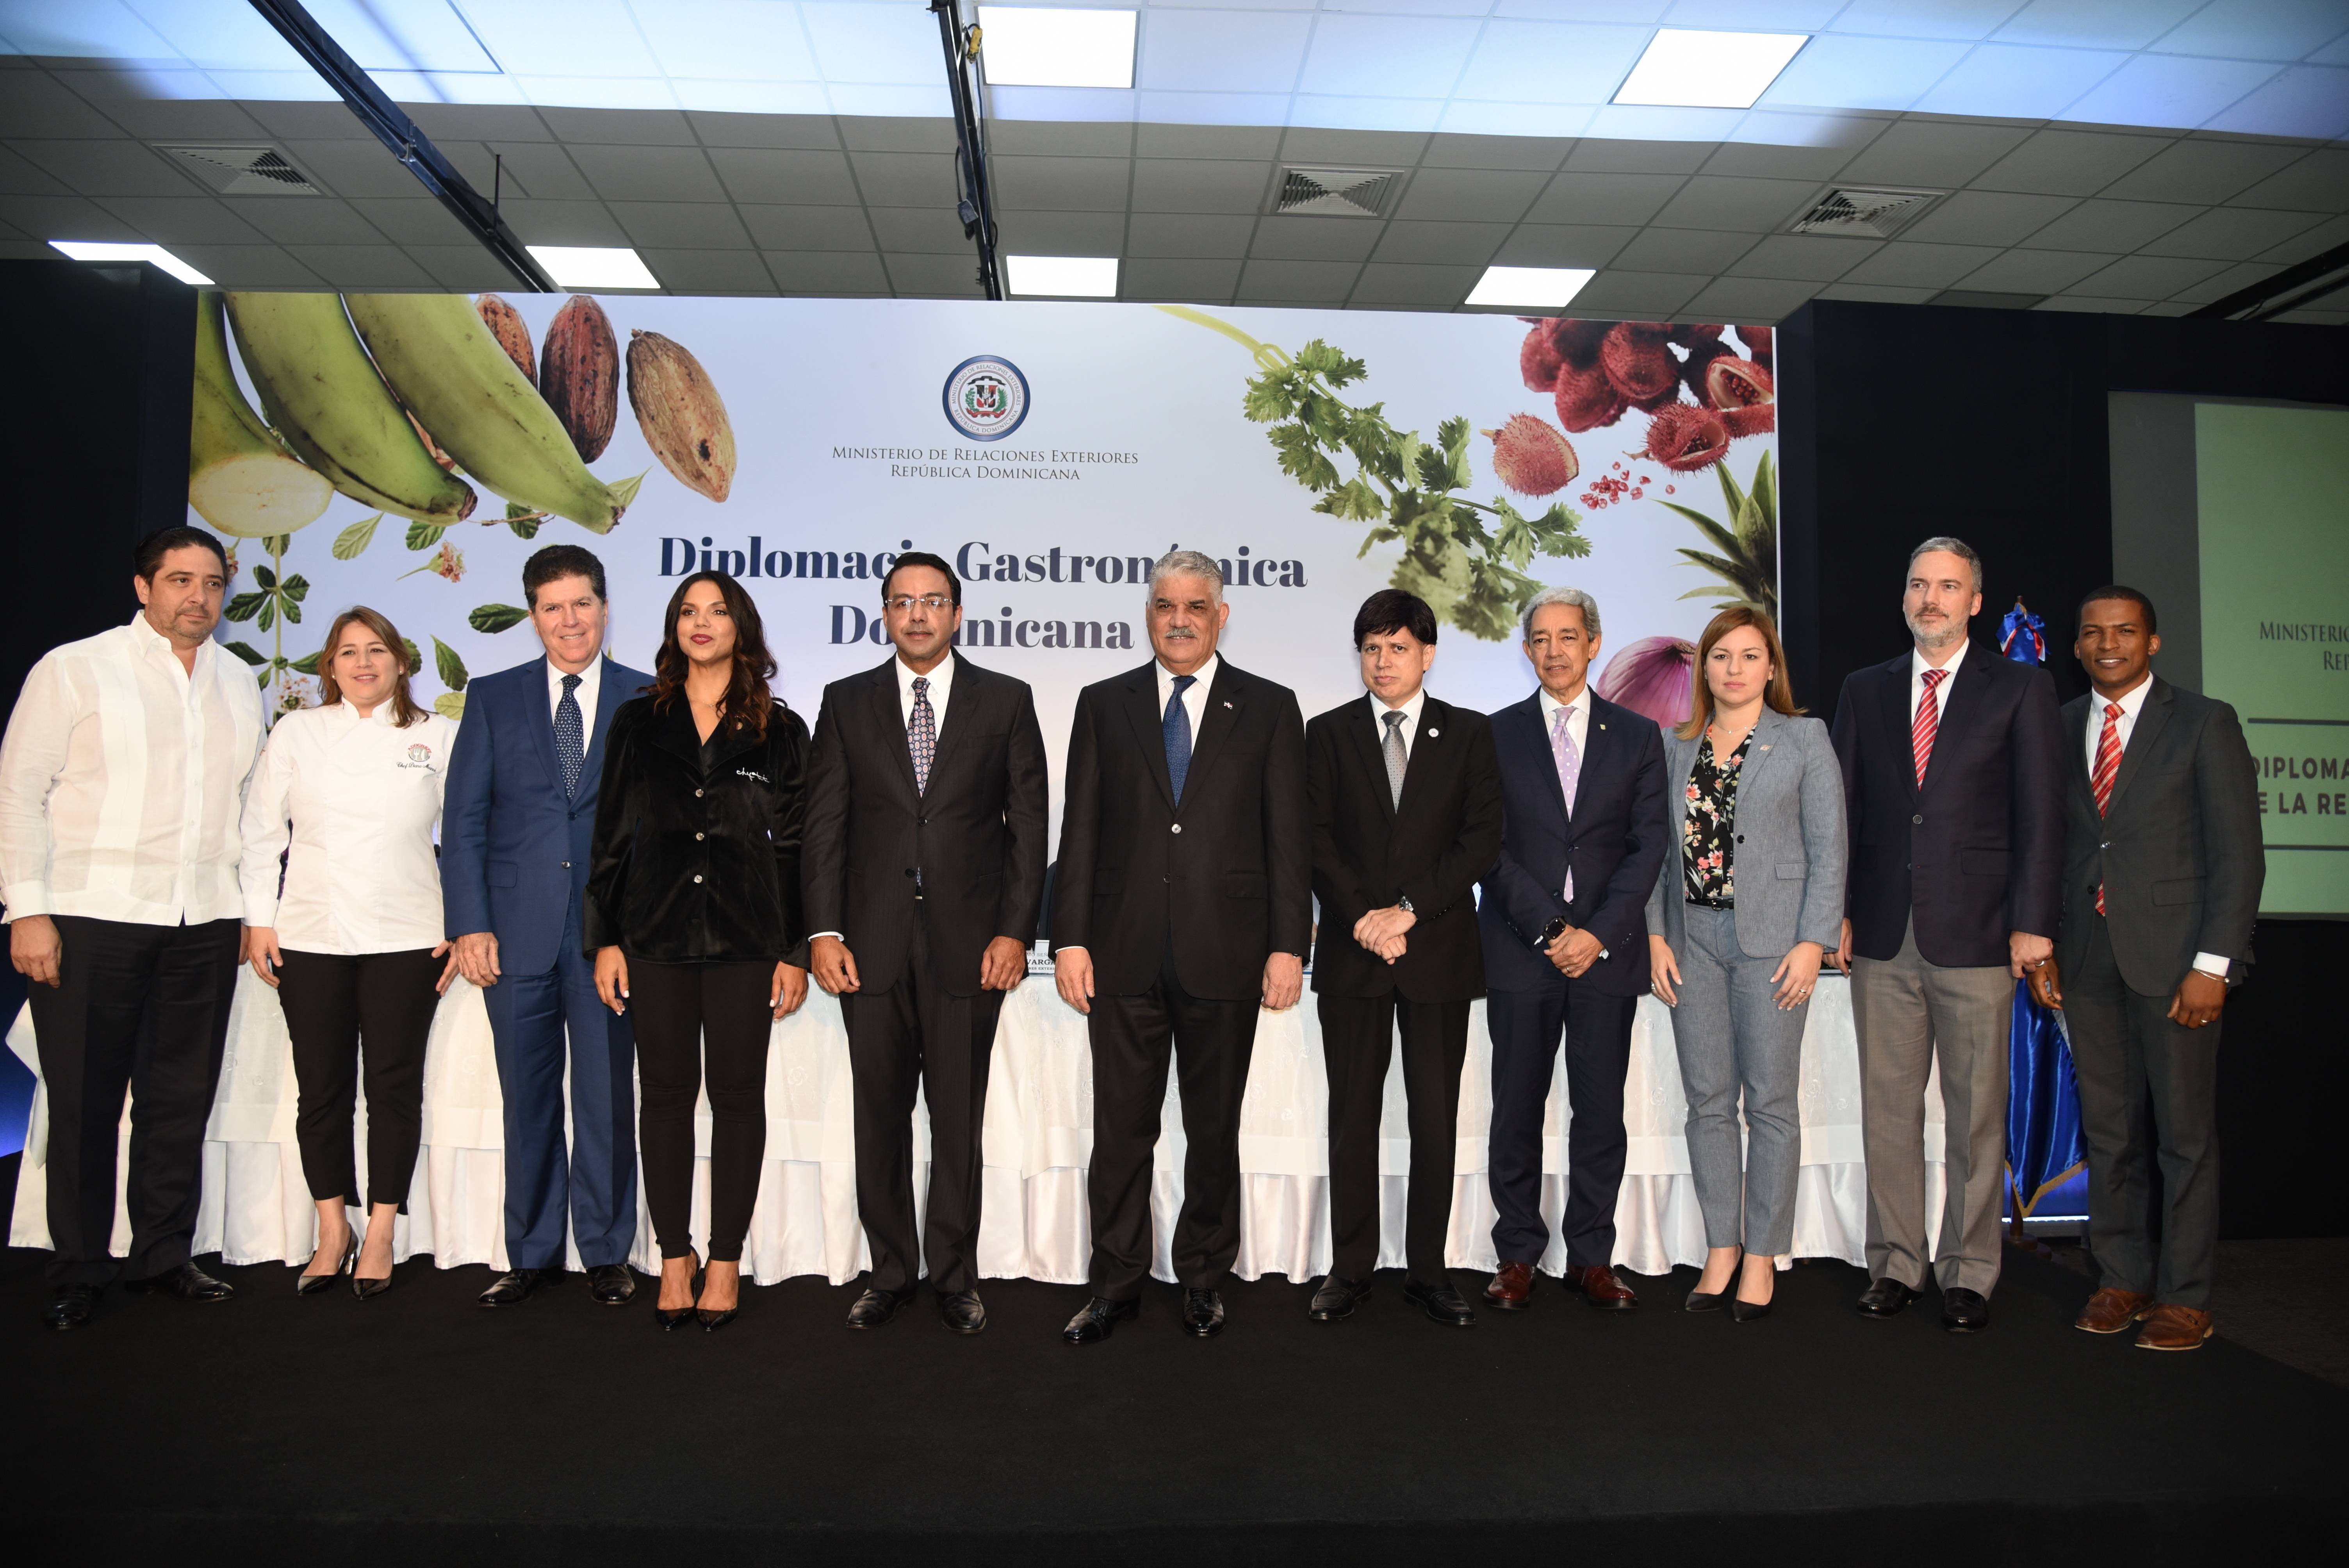 Cancillería lanzó diplomacia gastronómica de República Dominicana